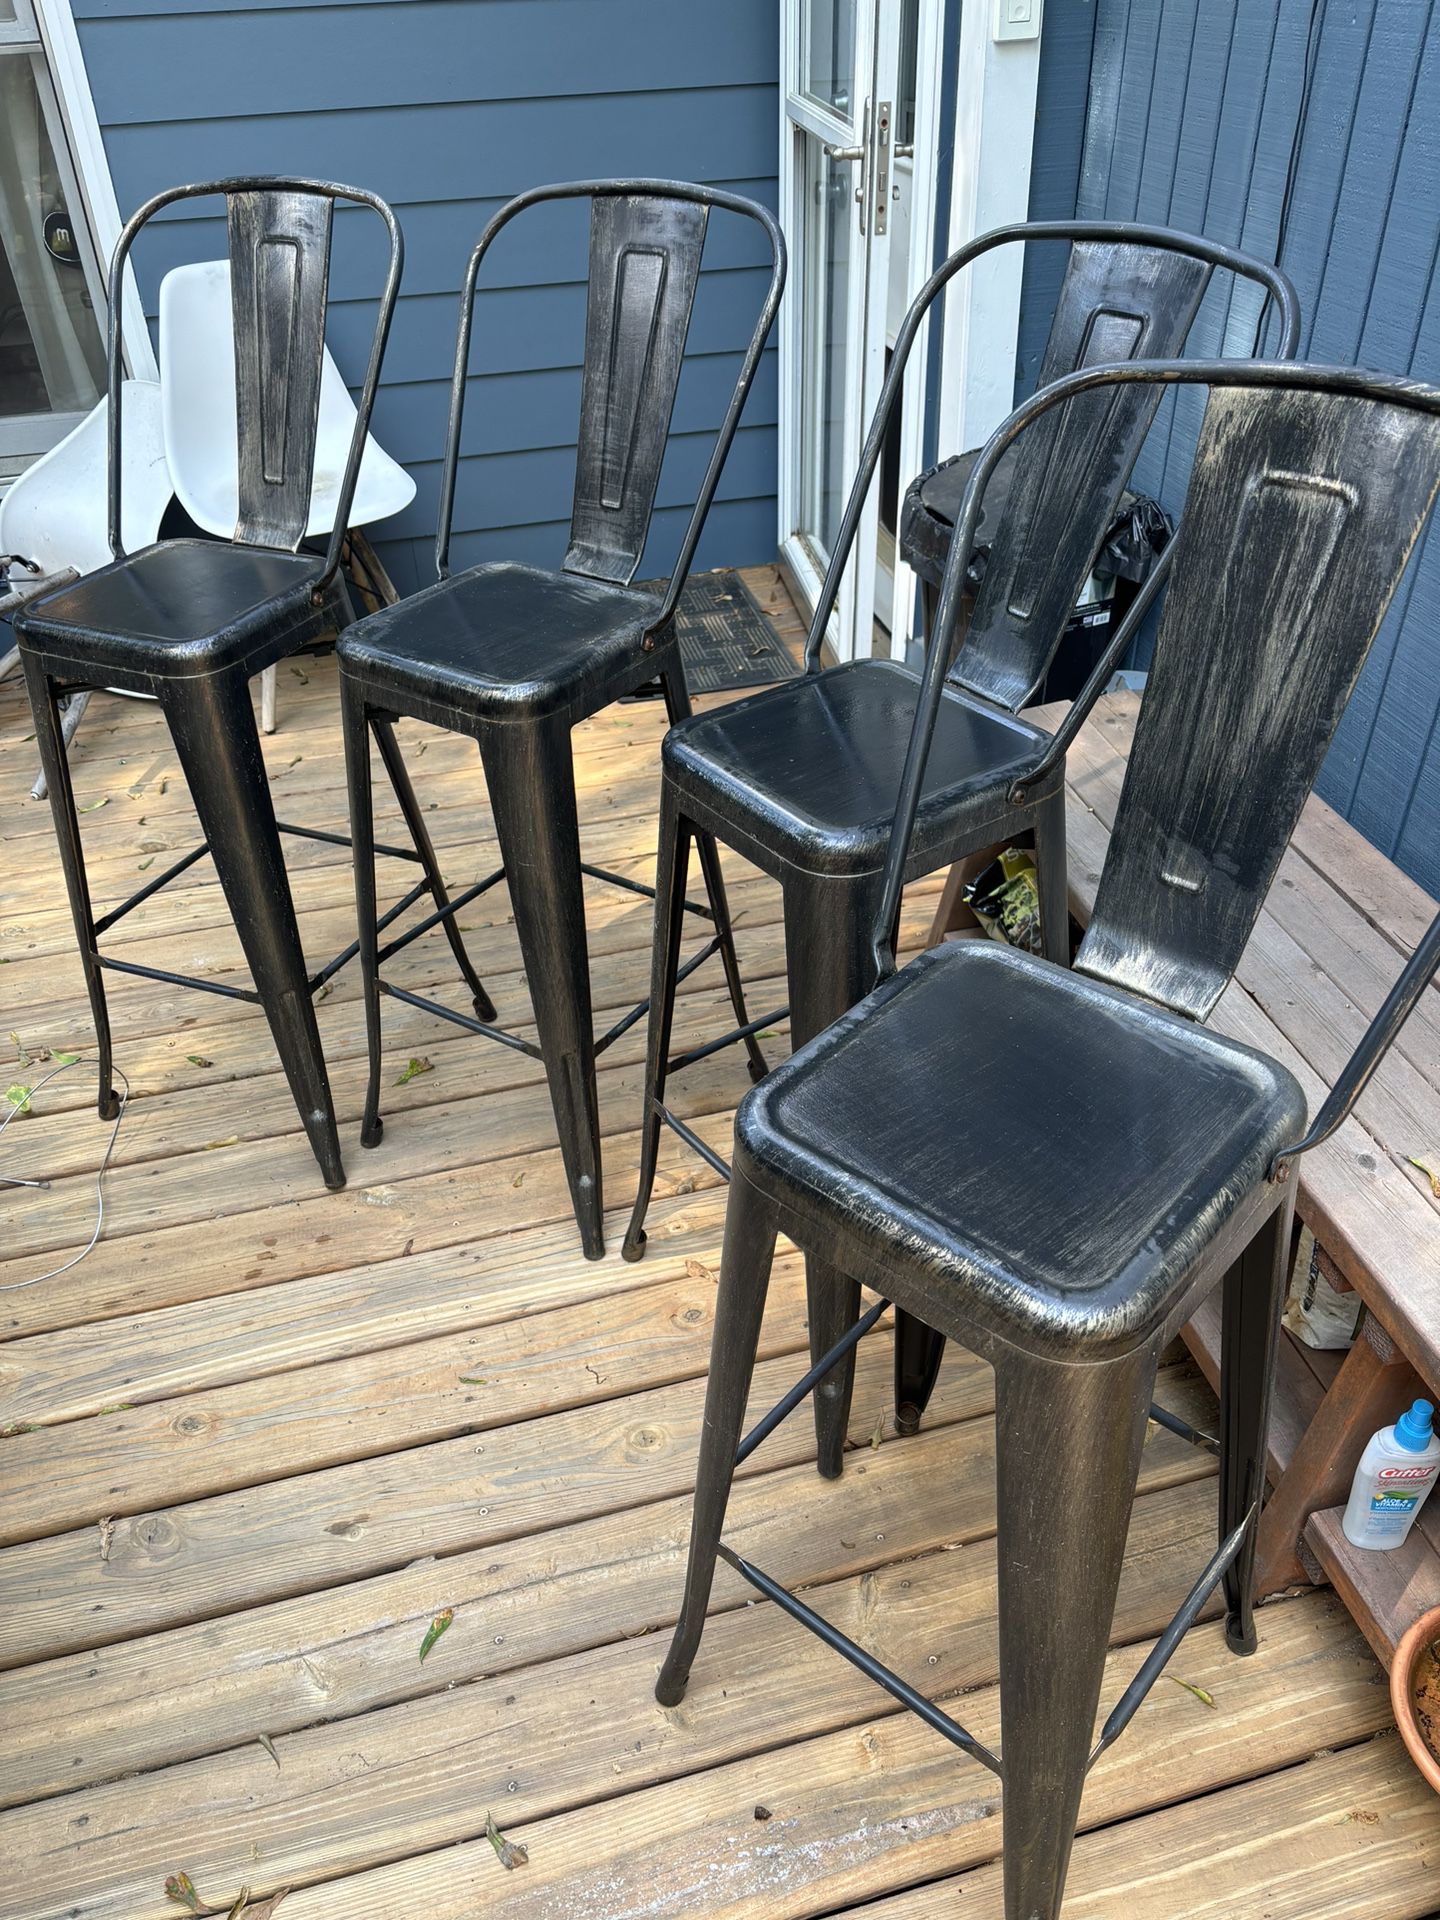 4 Bar Chairs